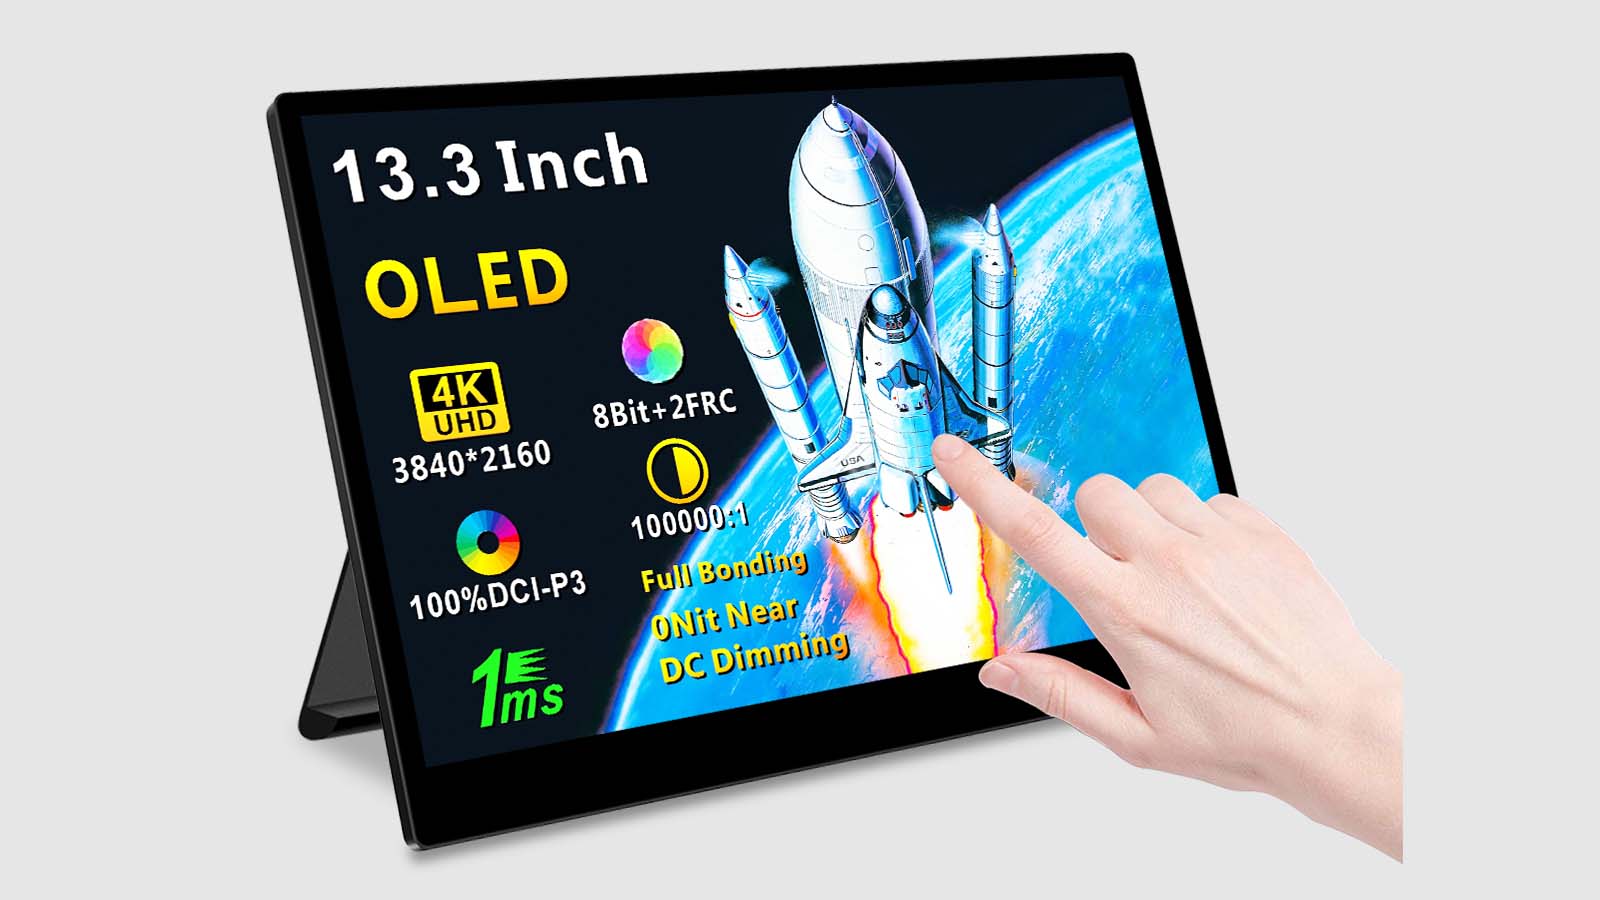 Magedok 13.3 Inch OLED 4K UHD Monitor